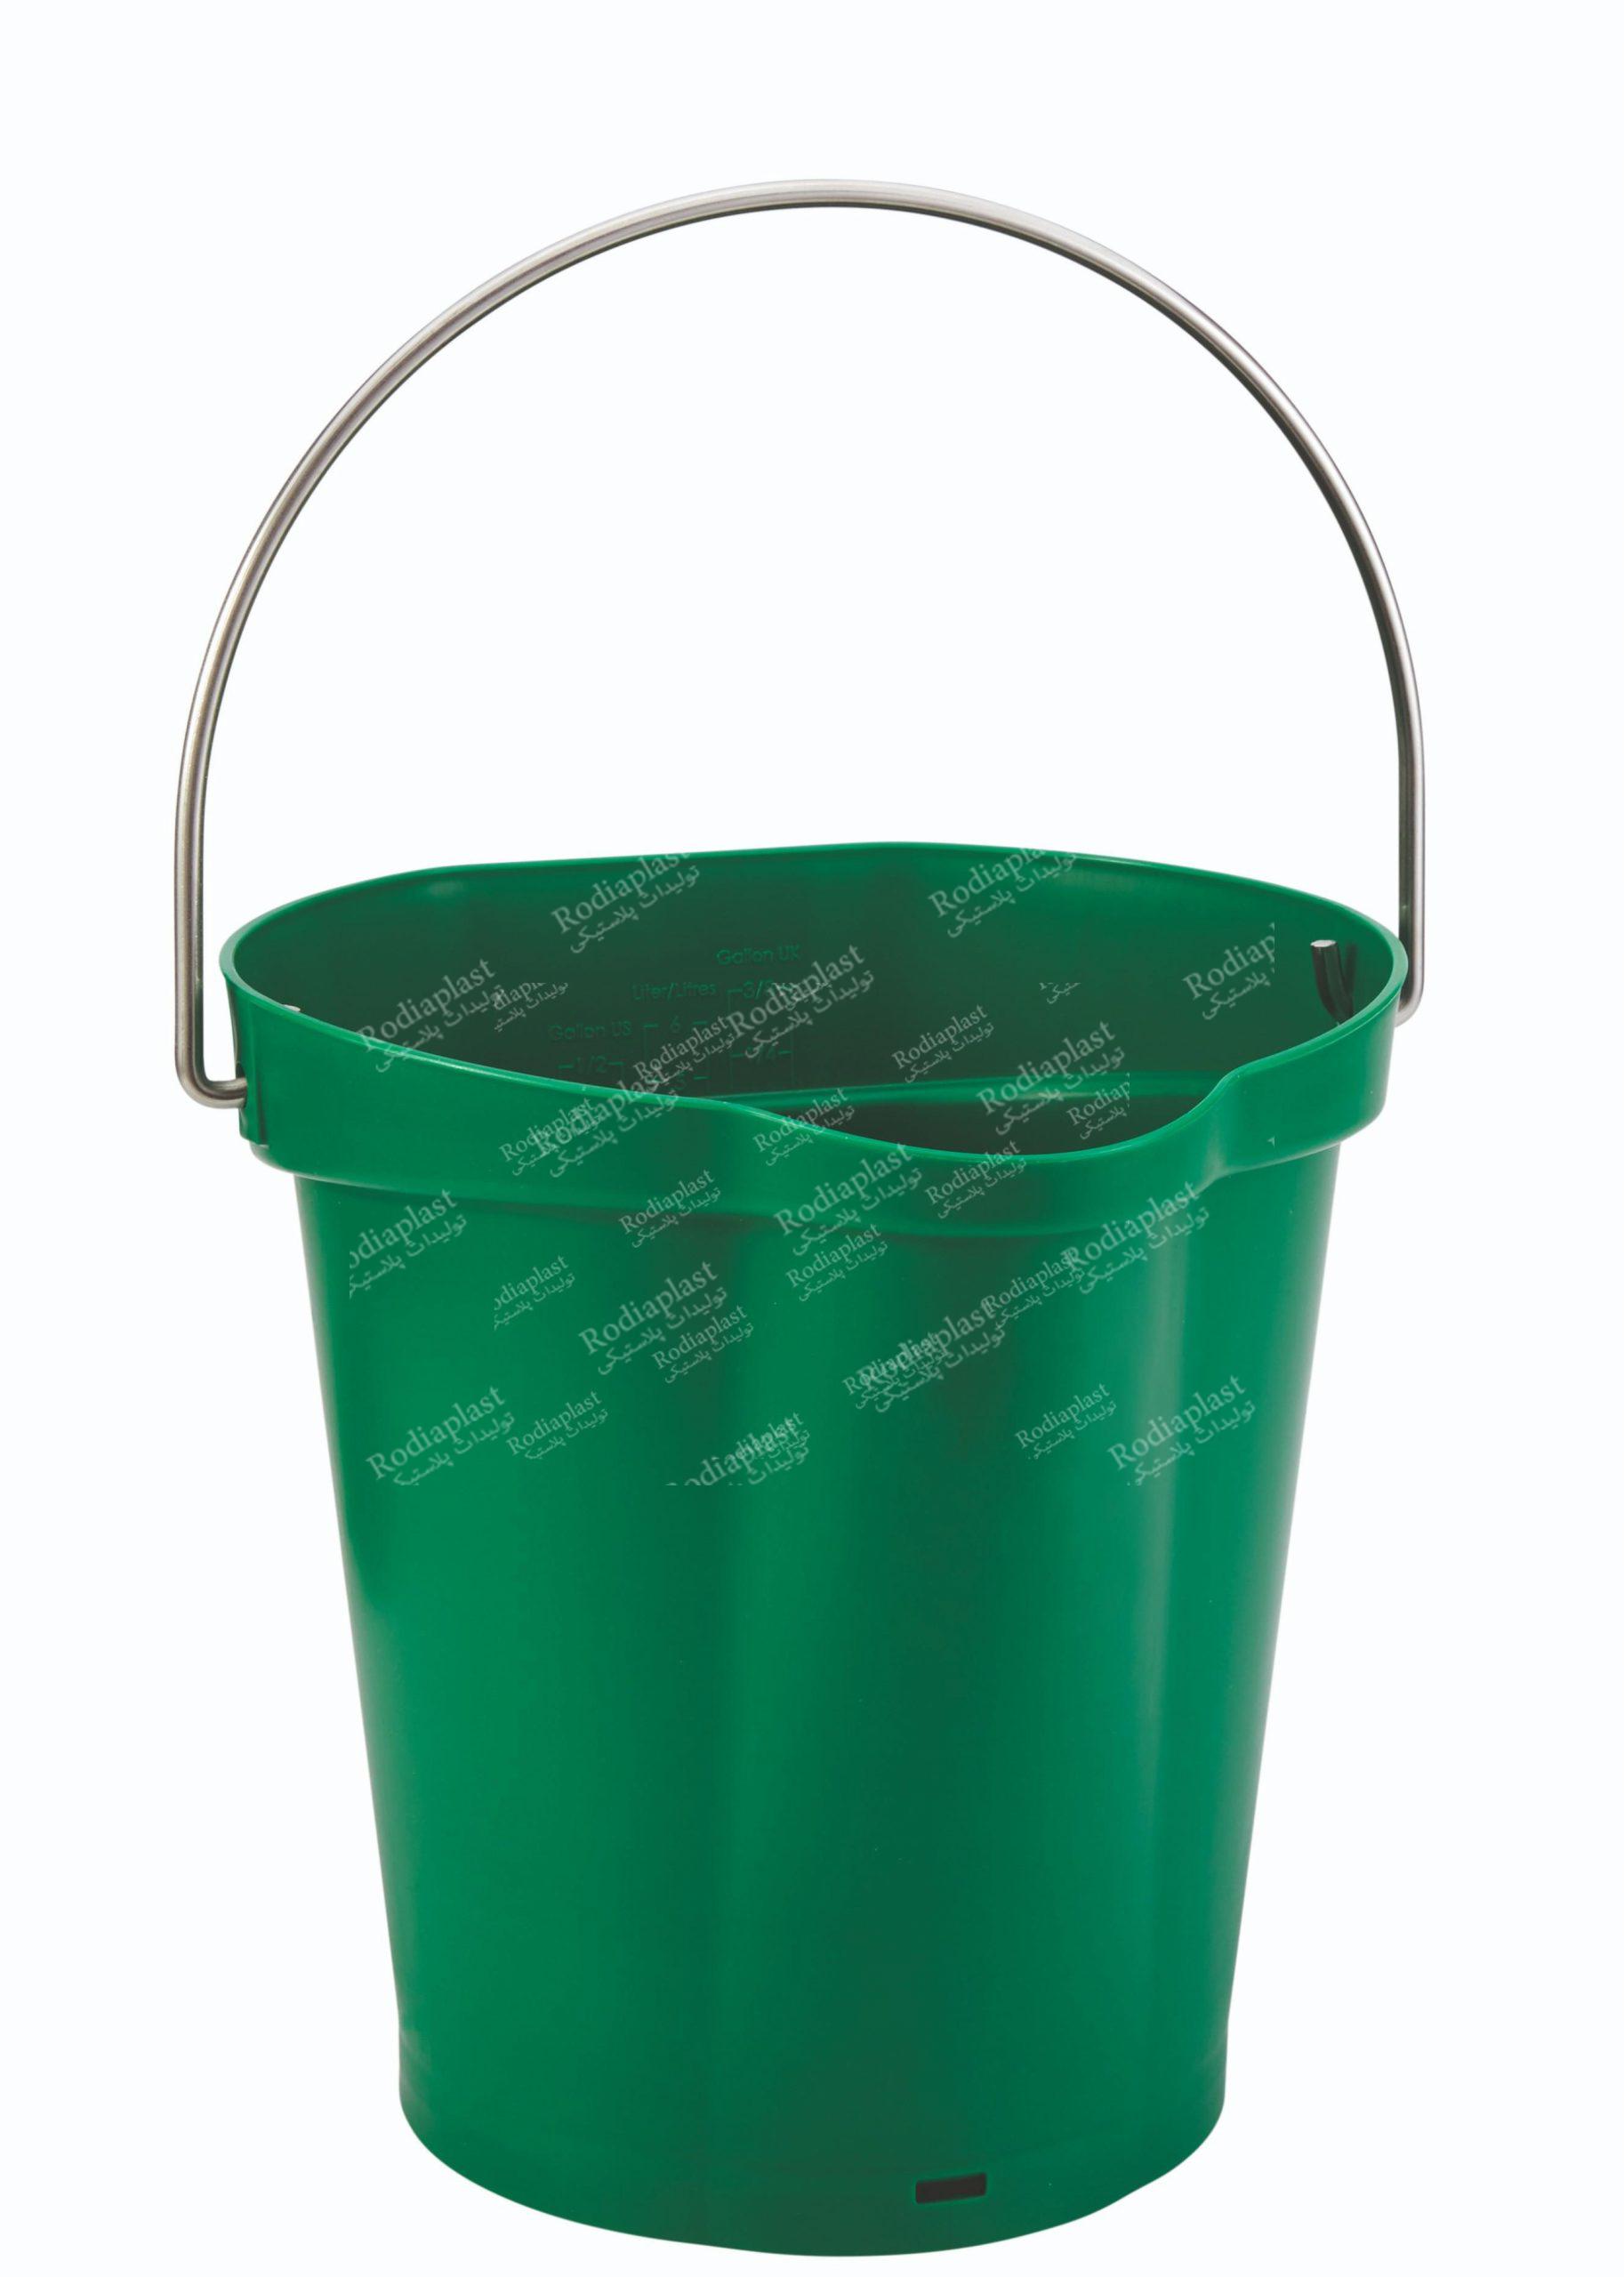 سطل پلاستیکی بنایی بهتر است یا فلزی